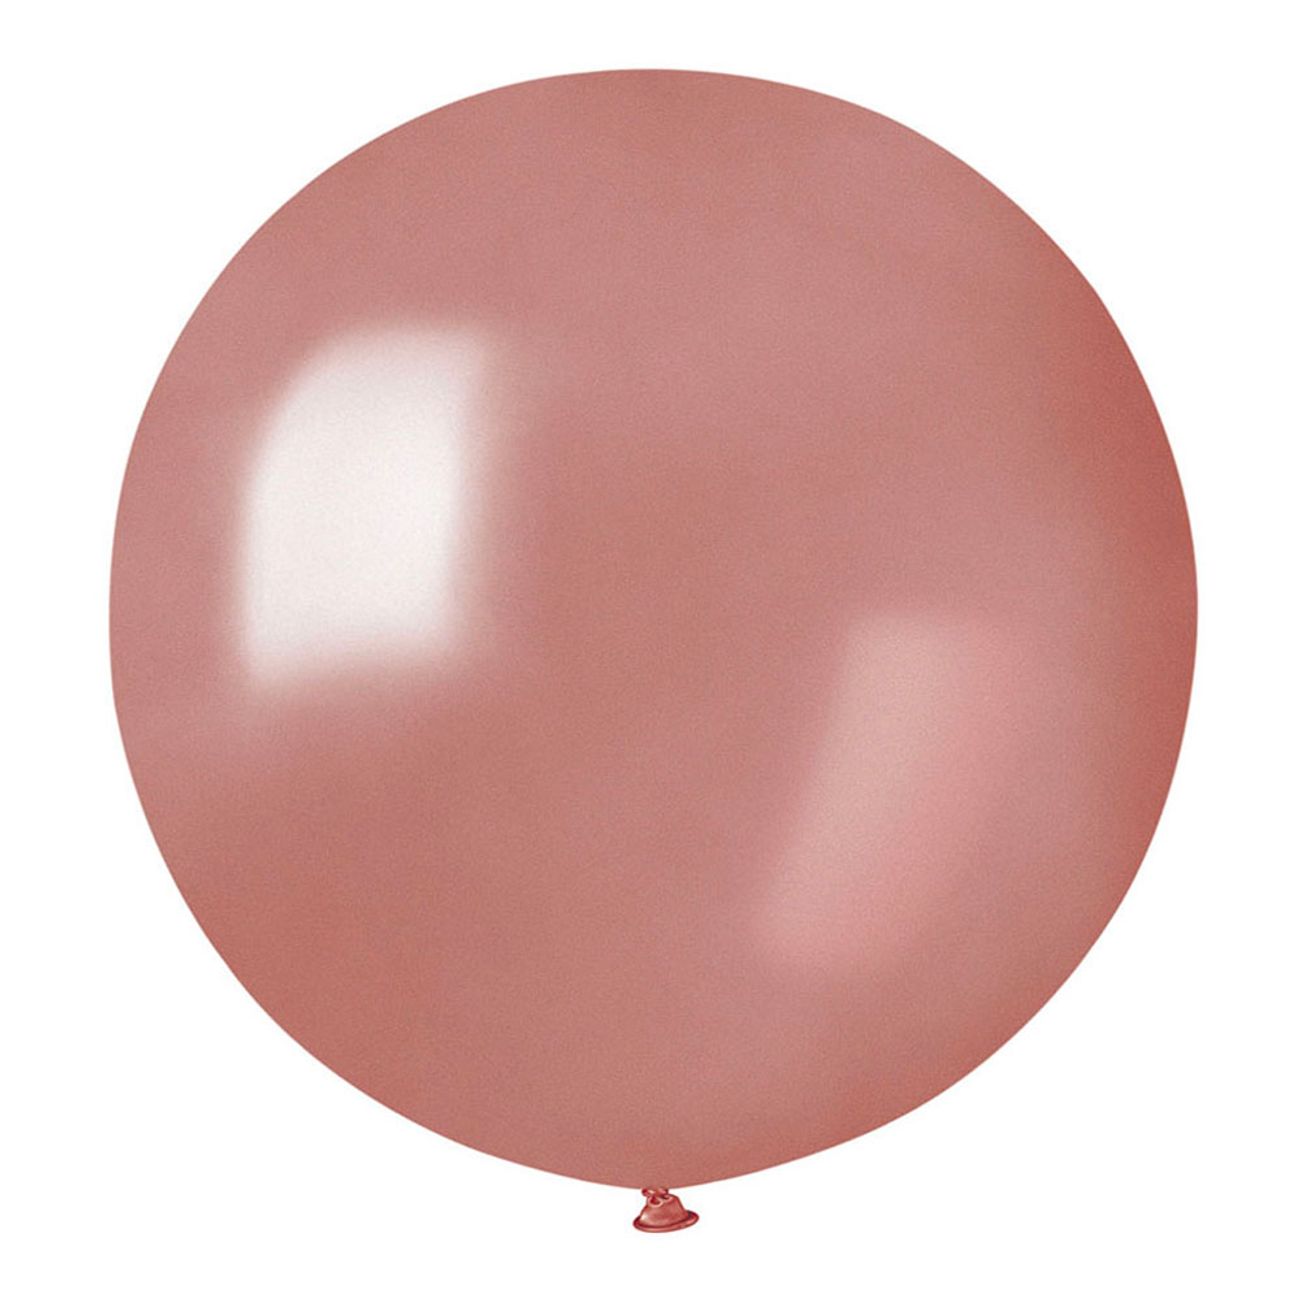 jatteballong-roseguld-1